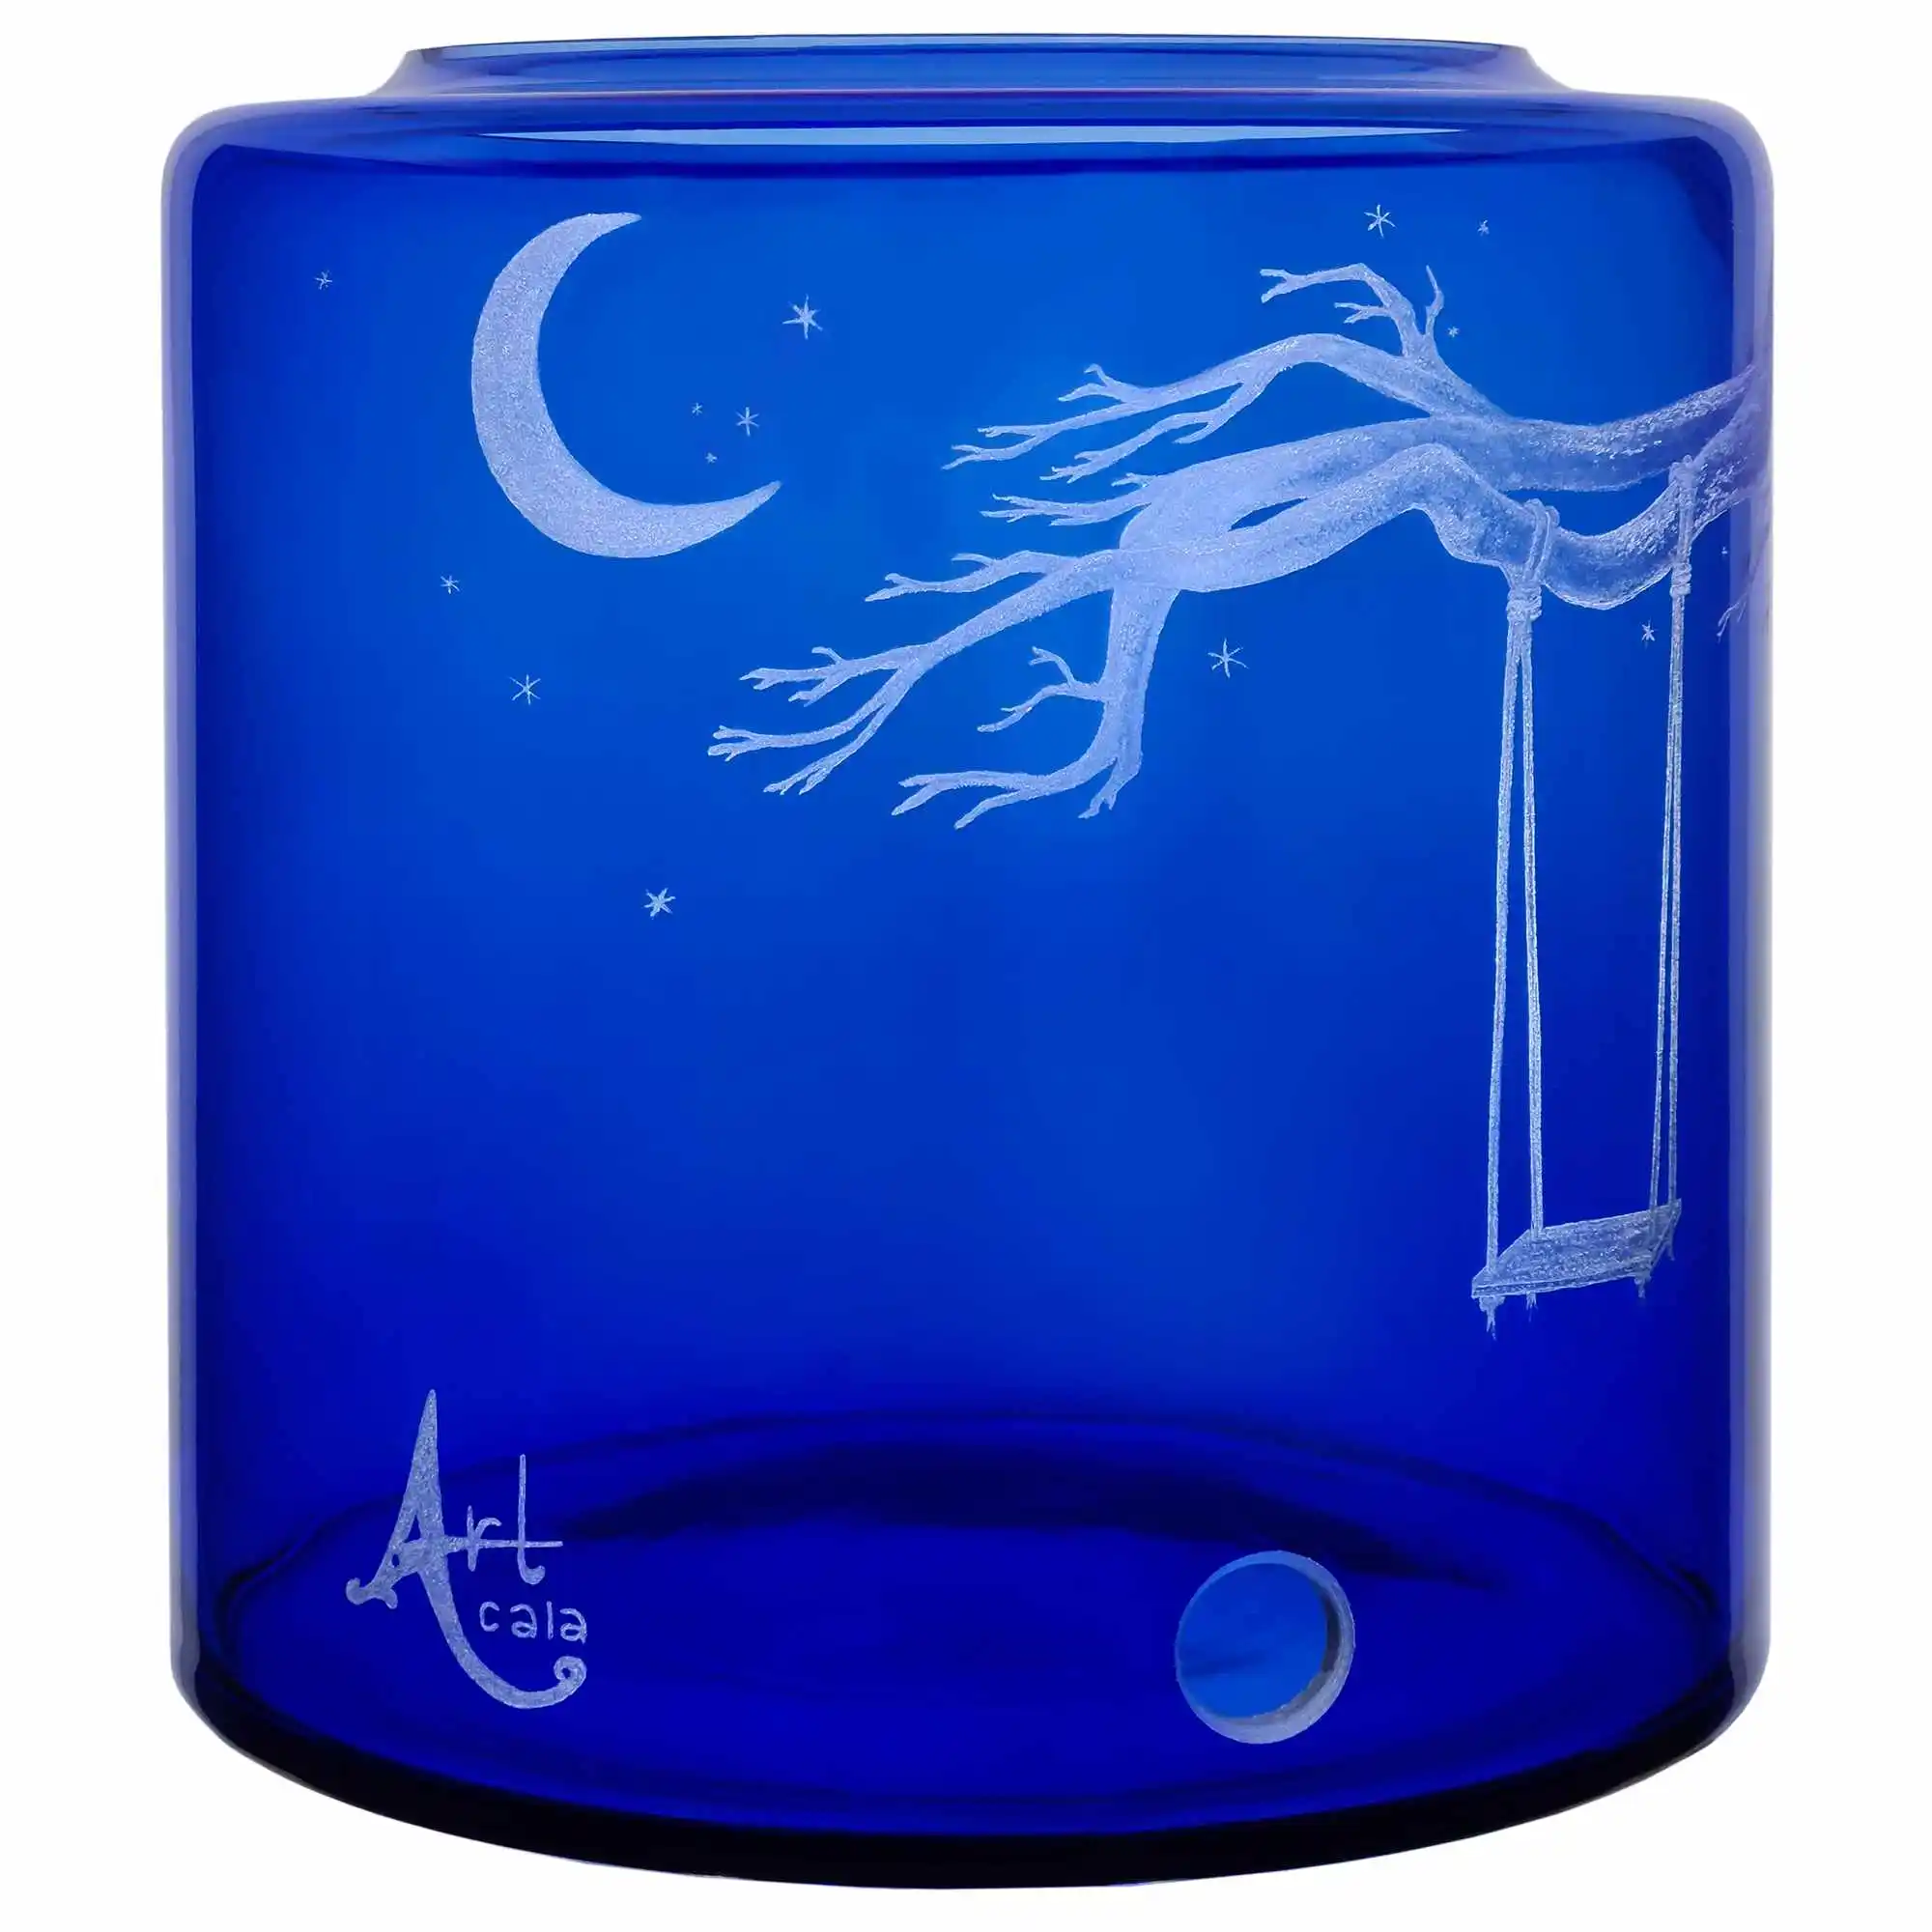 Glas- Vorratstank für einen Acala Wasserfilter Mini mit einer Handgravur. Die Gravur zeigt, auf blauem Glas, einen starken Ast eines Baumes an dem eine Schaukel mit einem langen Seil befestigt ist. Ansicht von links.